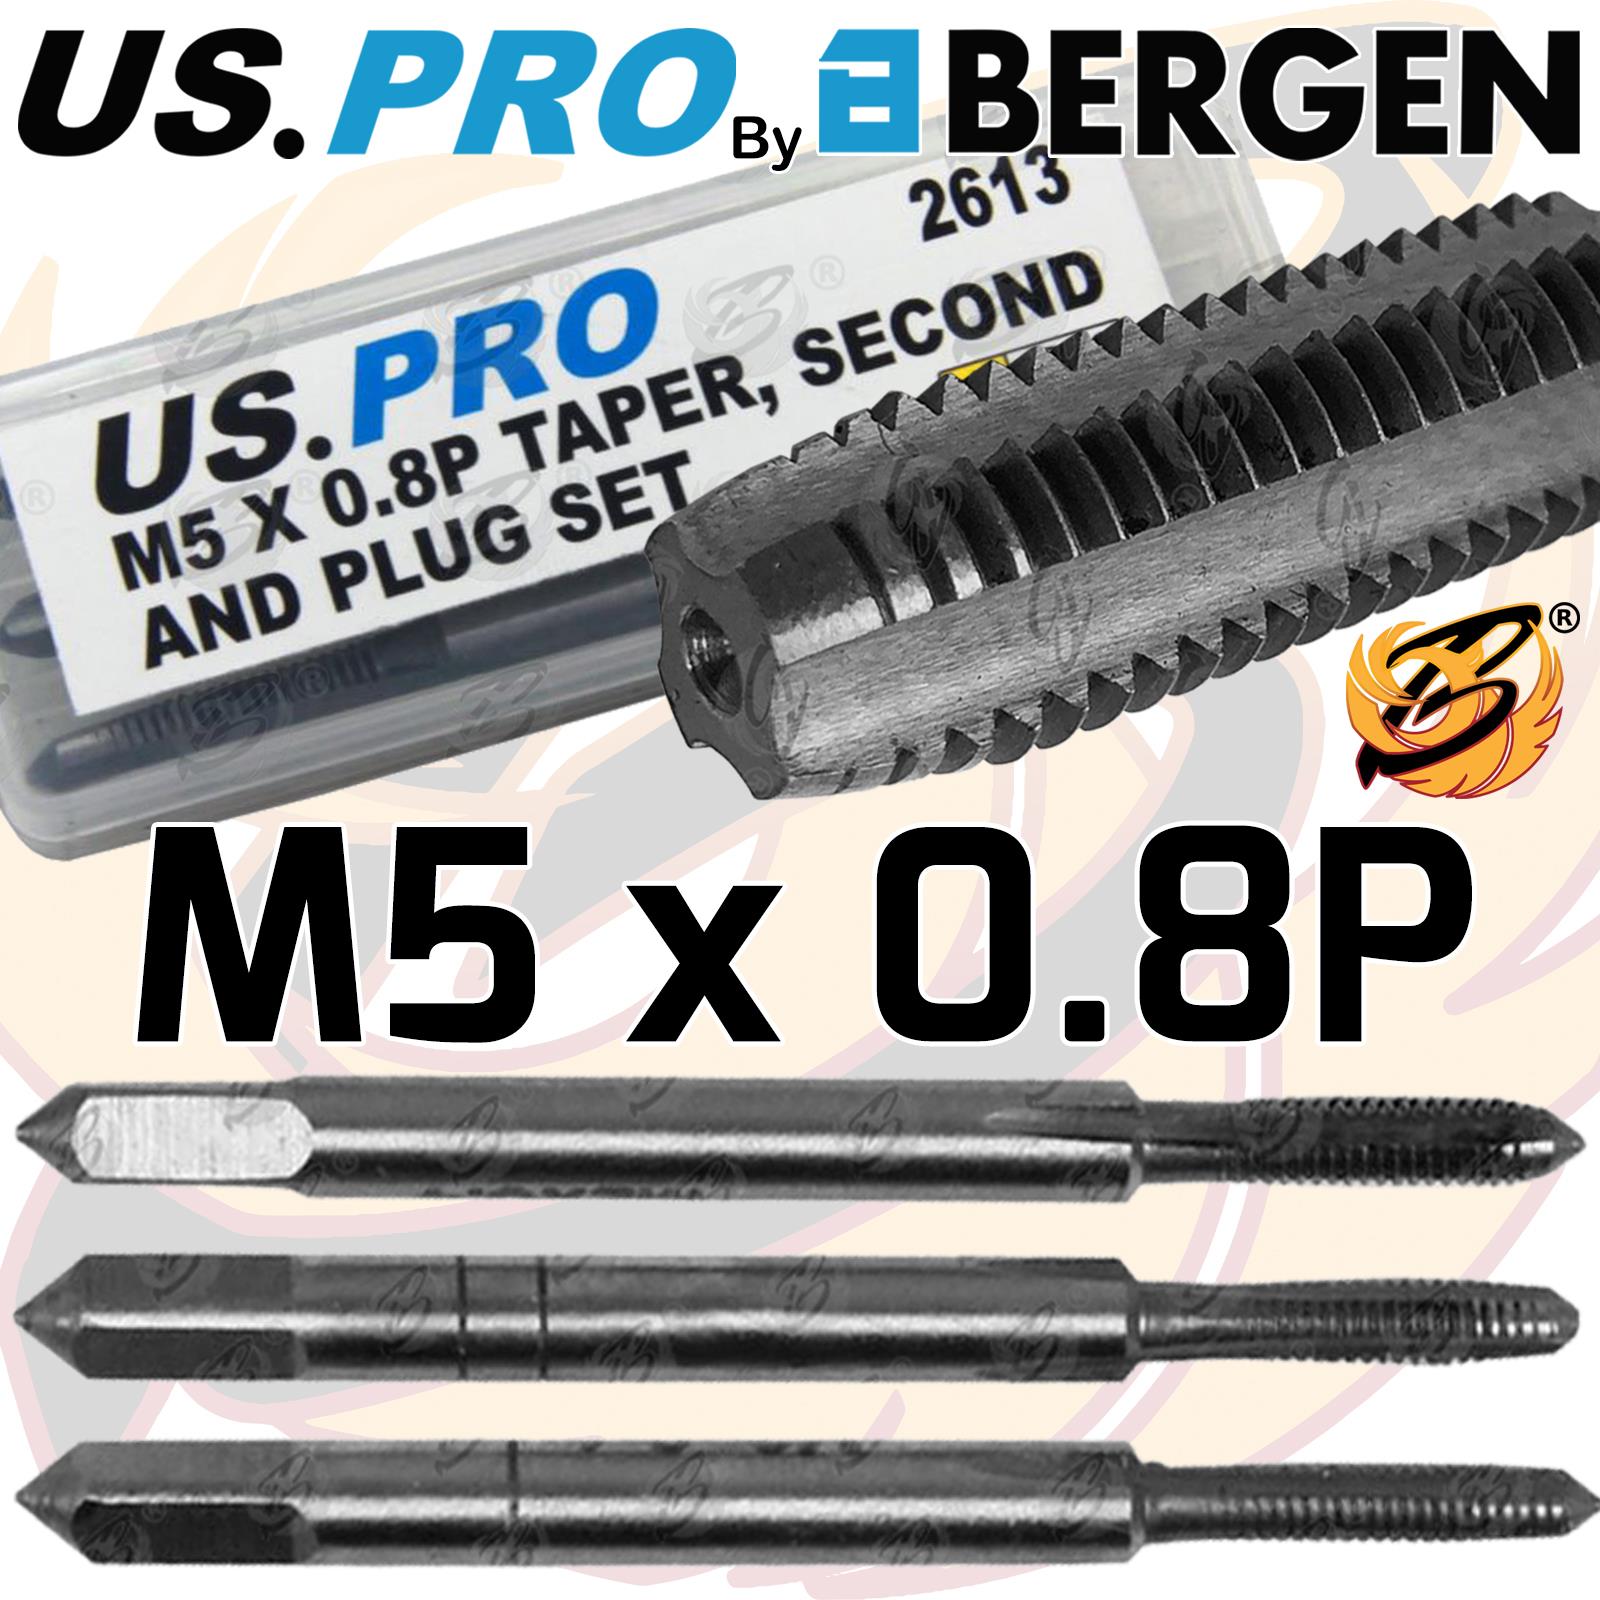 US PRO M5 x 0.8P TAPER, SECOND & PLUG SET